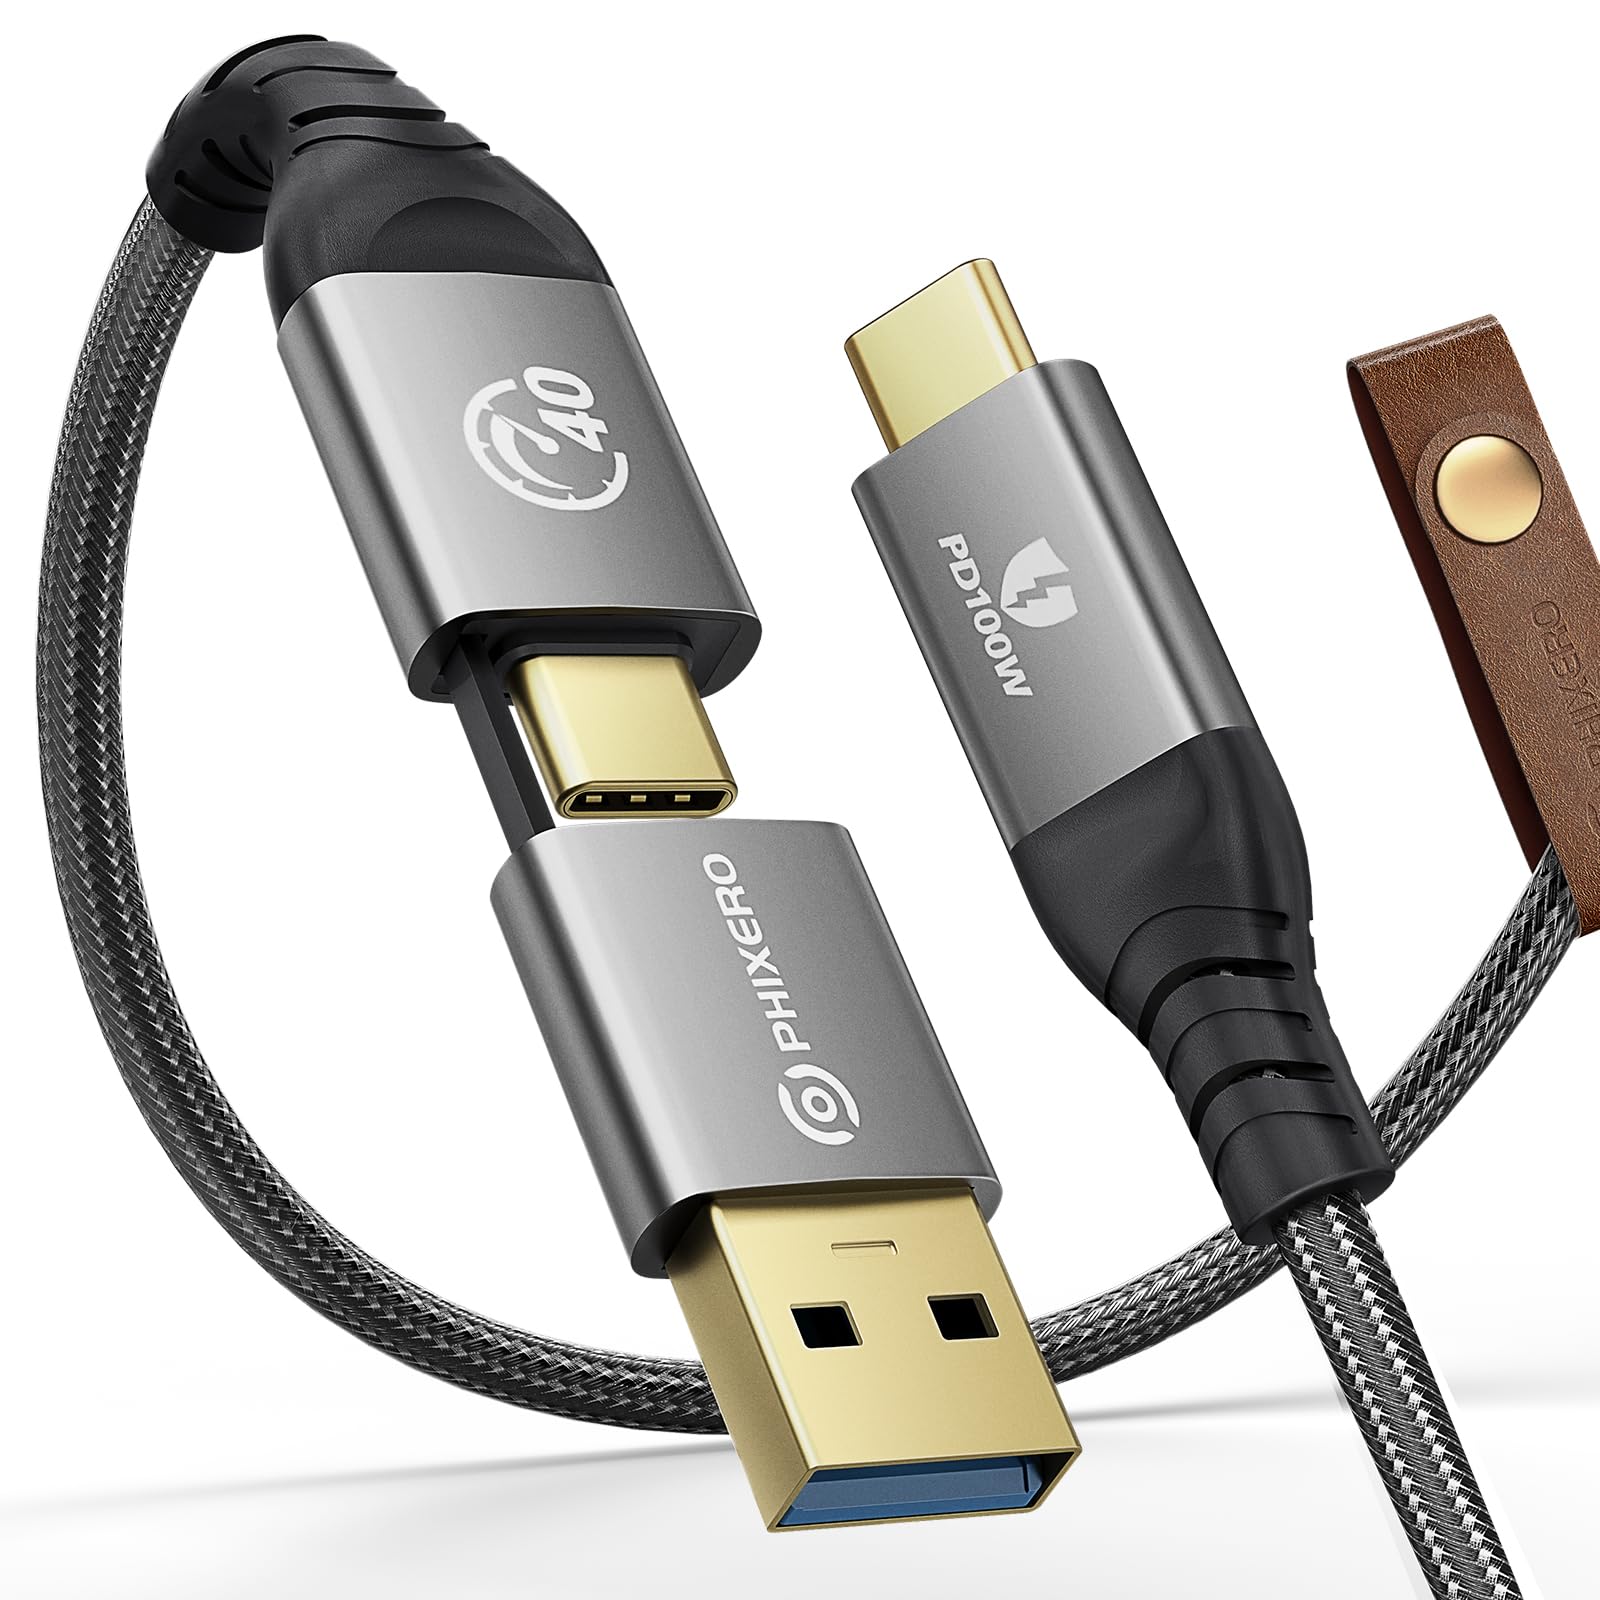 PHIXERO USB-4-Kabel, kompatibel mit Thunderbolt 4-Kabel [1,5 m], 40 Gbit/s Daten/8K @ 60 Hz Video/100 W Aufladen USB C auf USB A/C Multi-Kabel für Thunderbolt-Dockingstationen, MacBook, eGPU